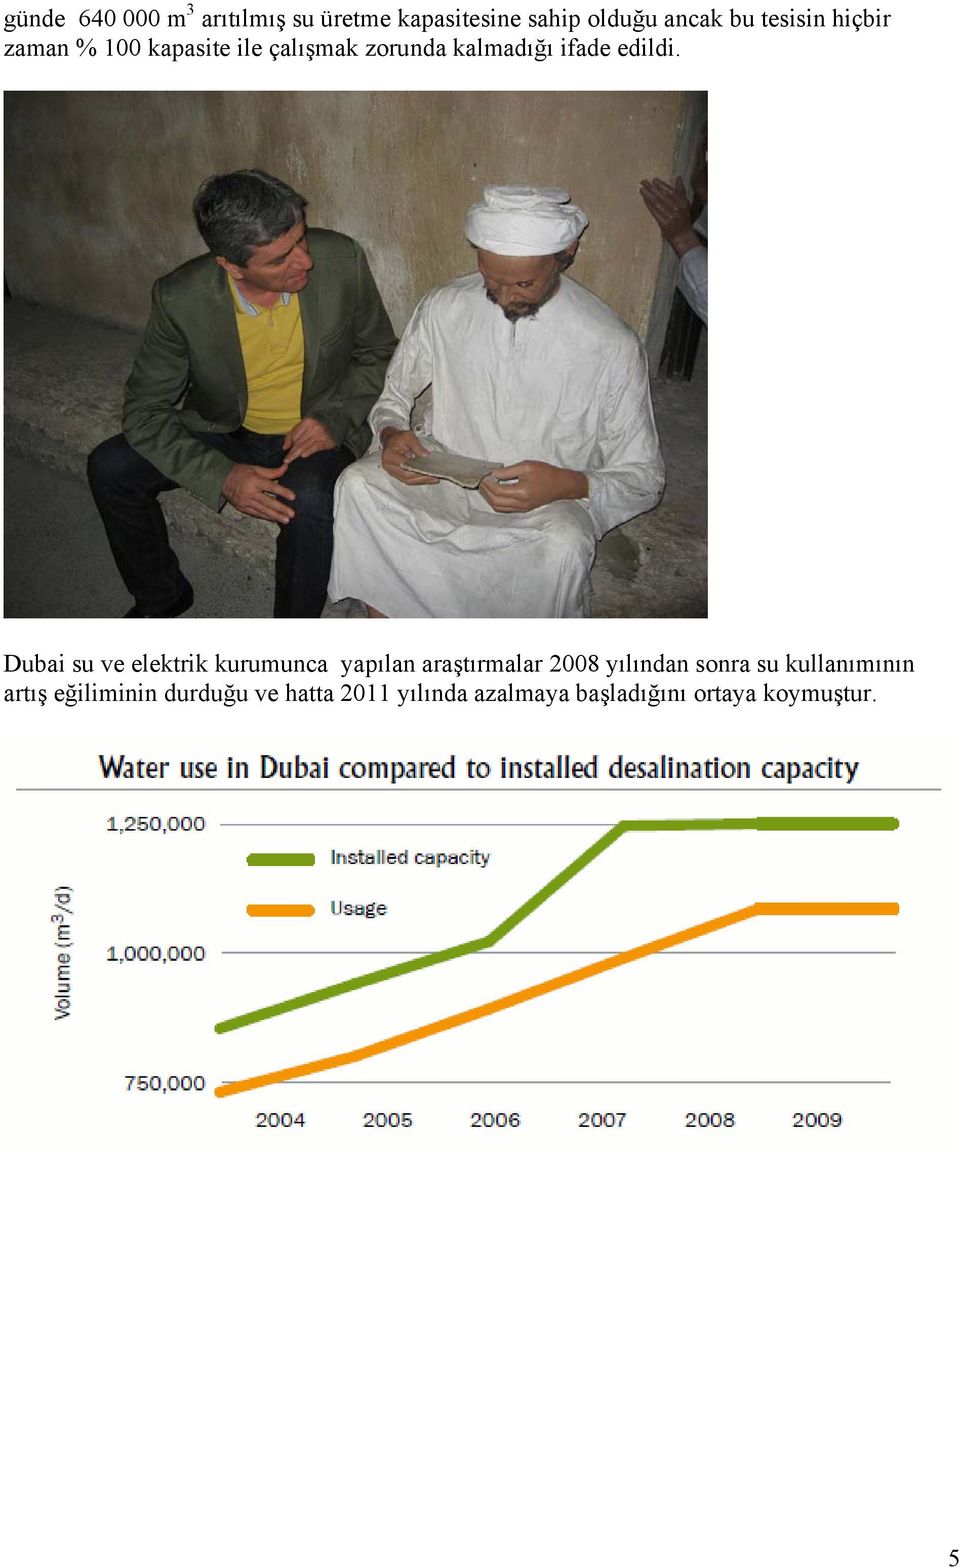 Dubai su ve elektrik kurumunca yapılan araştırmalar 2008 yılından sonra su